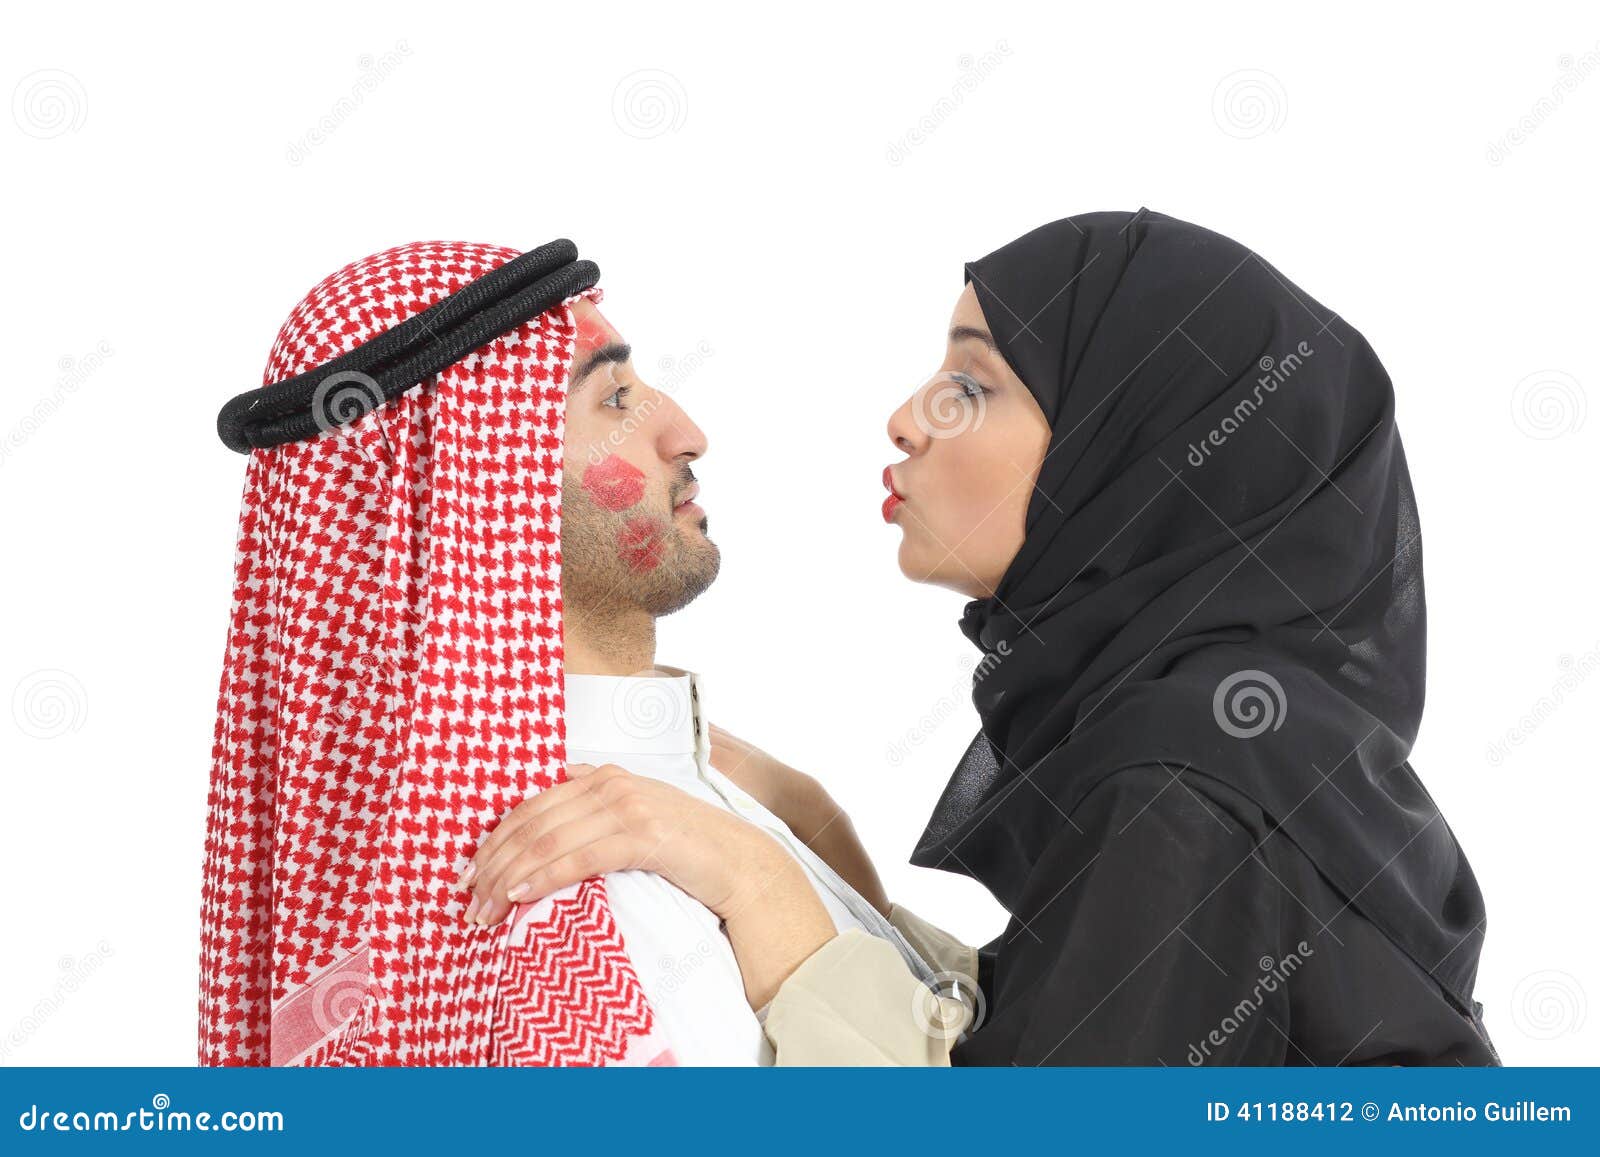 Download Free Hot Muslim Desperate Arab Woman Fucks For